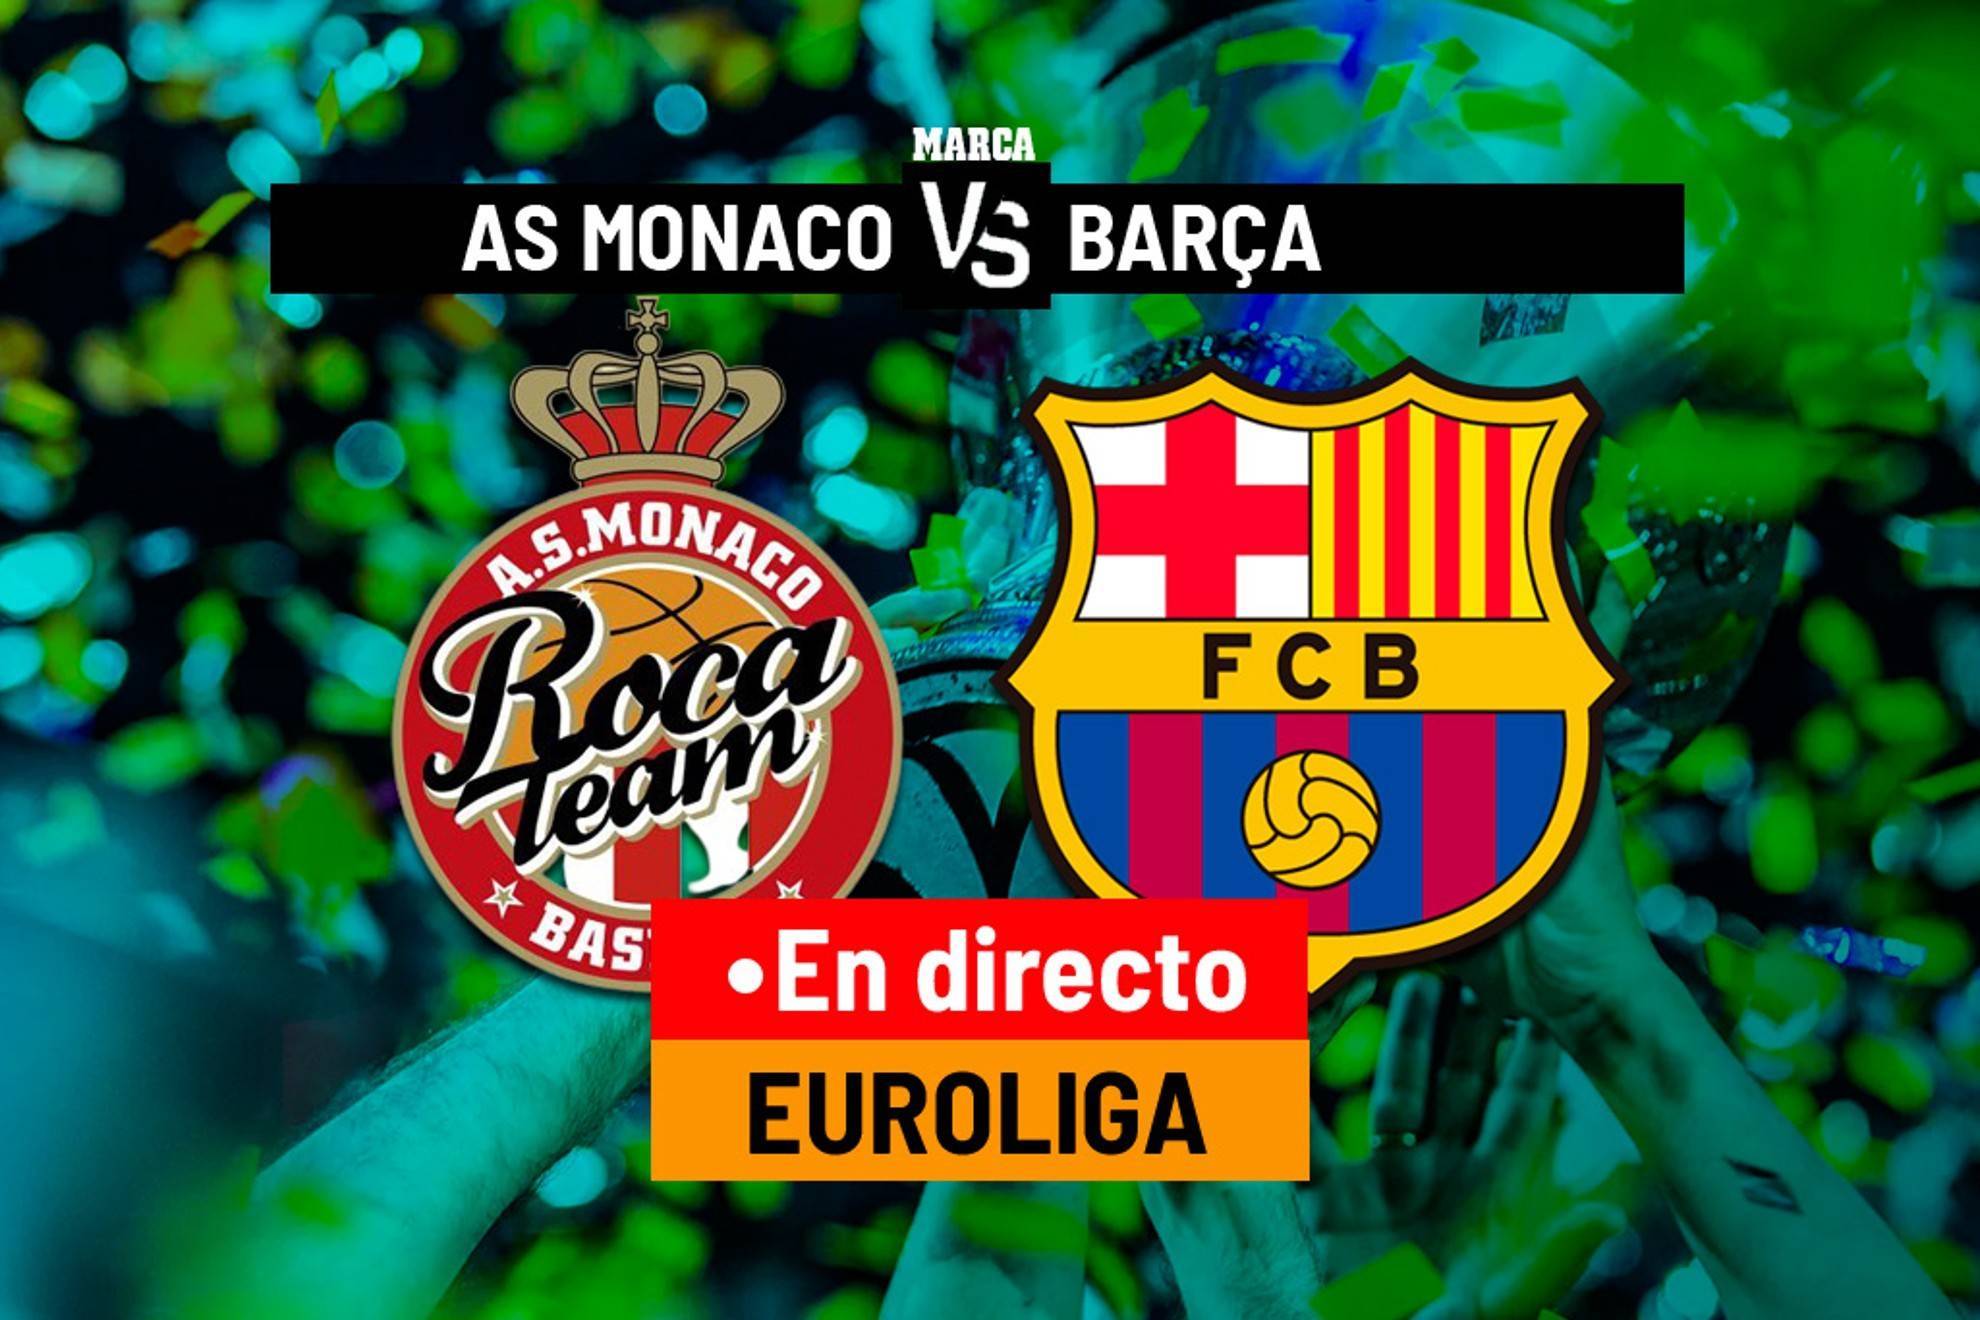 AS Monaco - Barcelona en directo: resumen, resultado y estadística